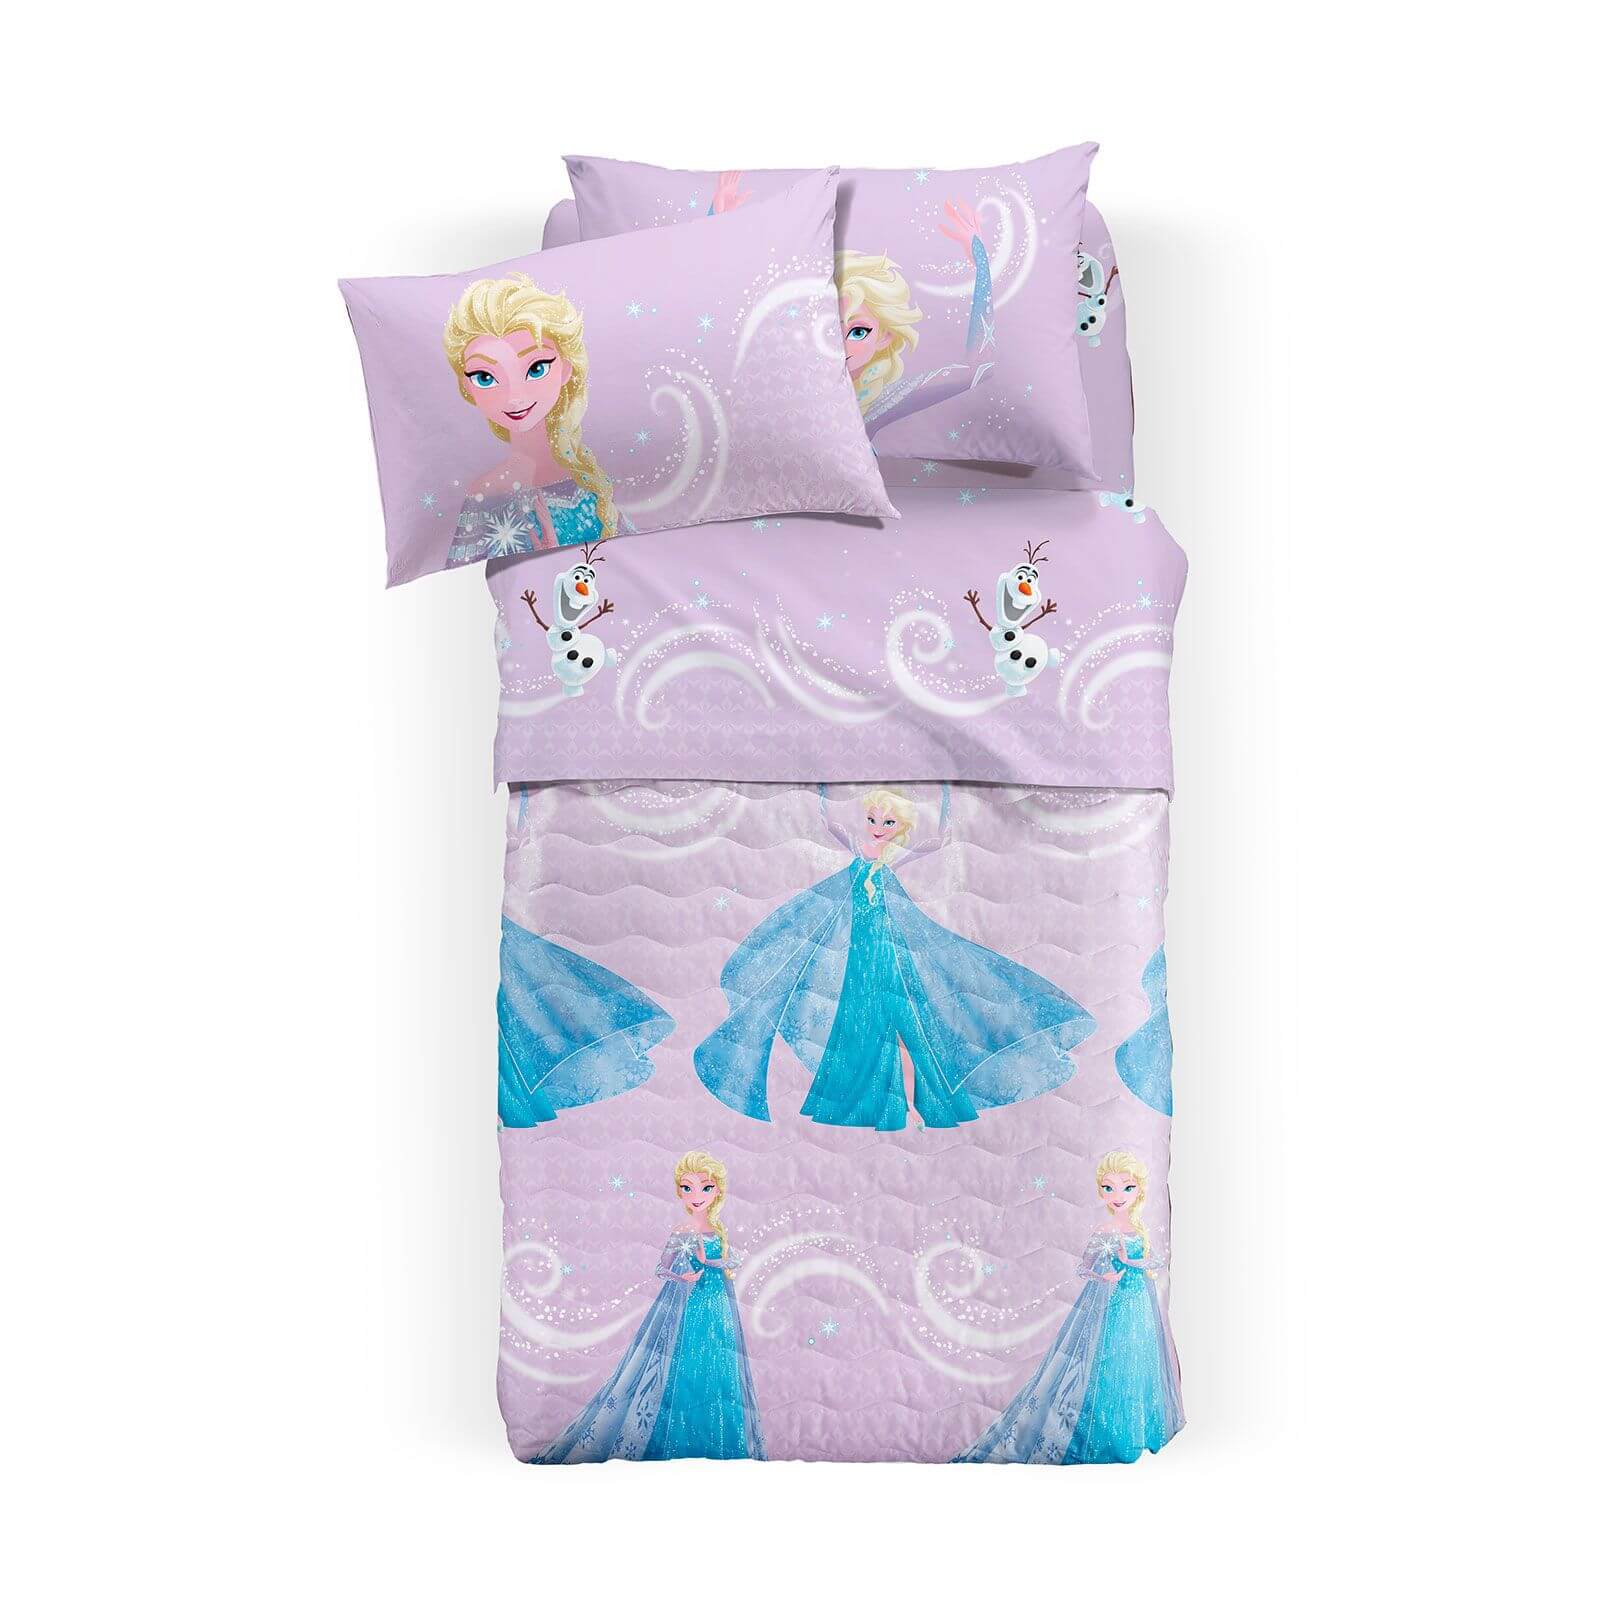 Trapuntino Frozen Star Caleffi Disney letto singolo copriletto bambina Elsa